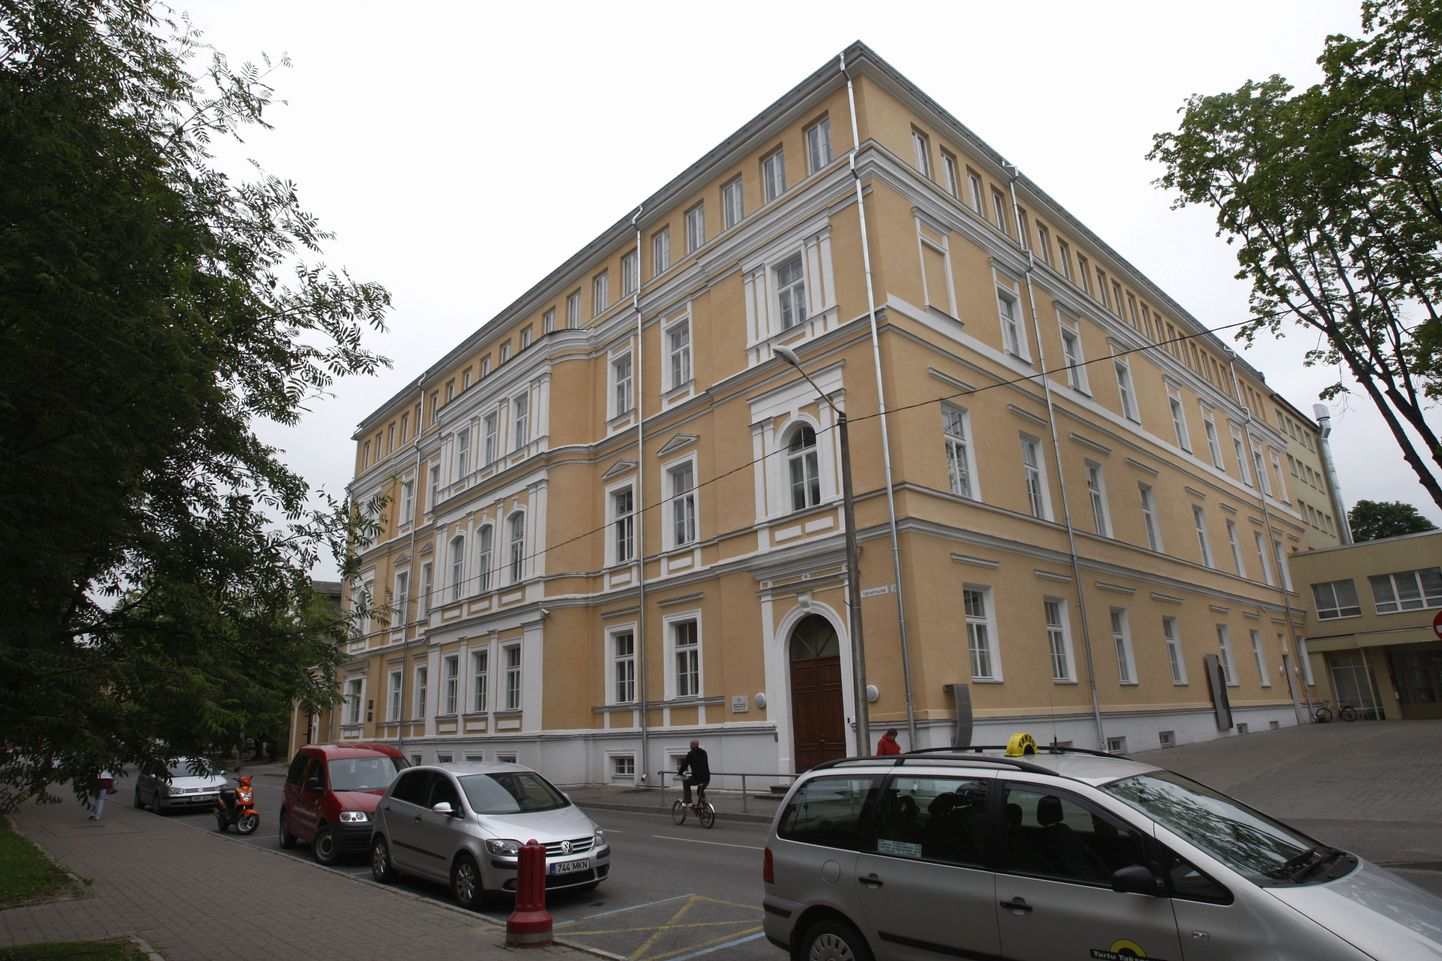 Jaan Poska gümnaasiumi hoone, milles 2. veebruaril 1920 sõlmiti Venemaa ja Eesti vahel Tartu rahu.